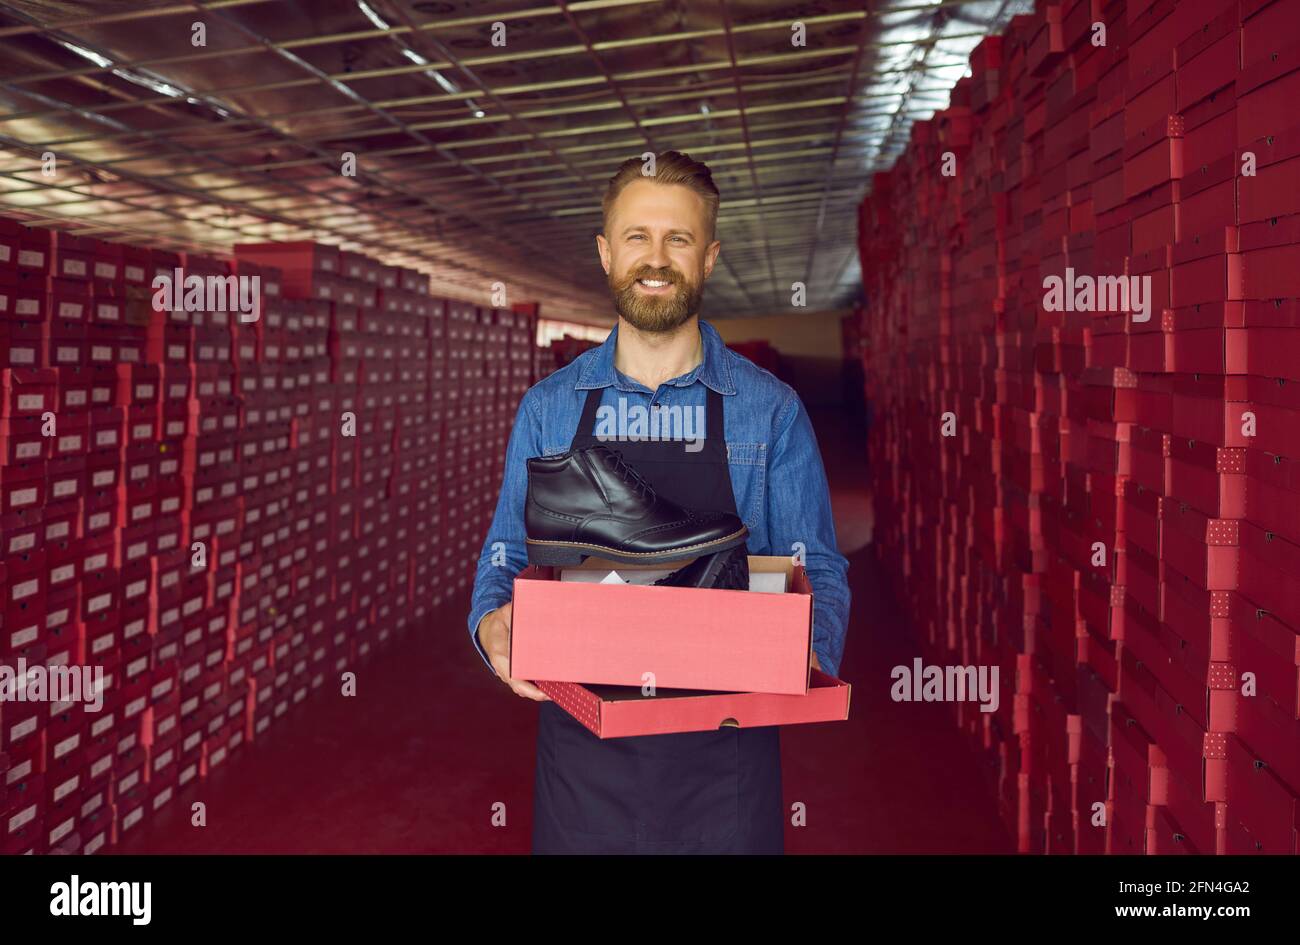 Glücklicher Schuhfabrikbesitzer oder Lagerverwalter, der einen Karton hält Mit schwarzen Lederstiefeln Stockfoto